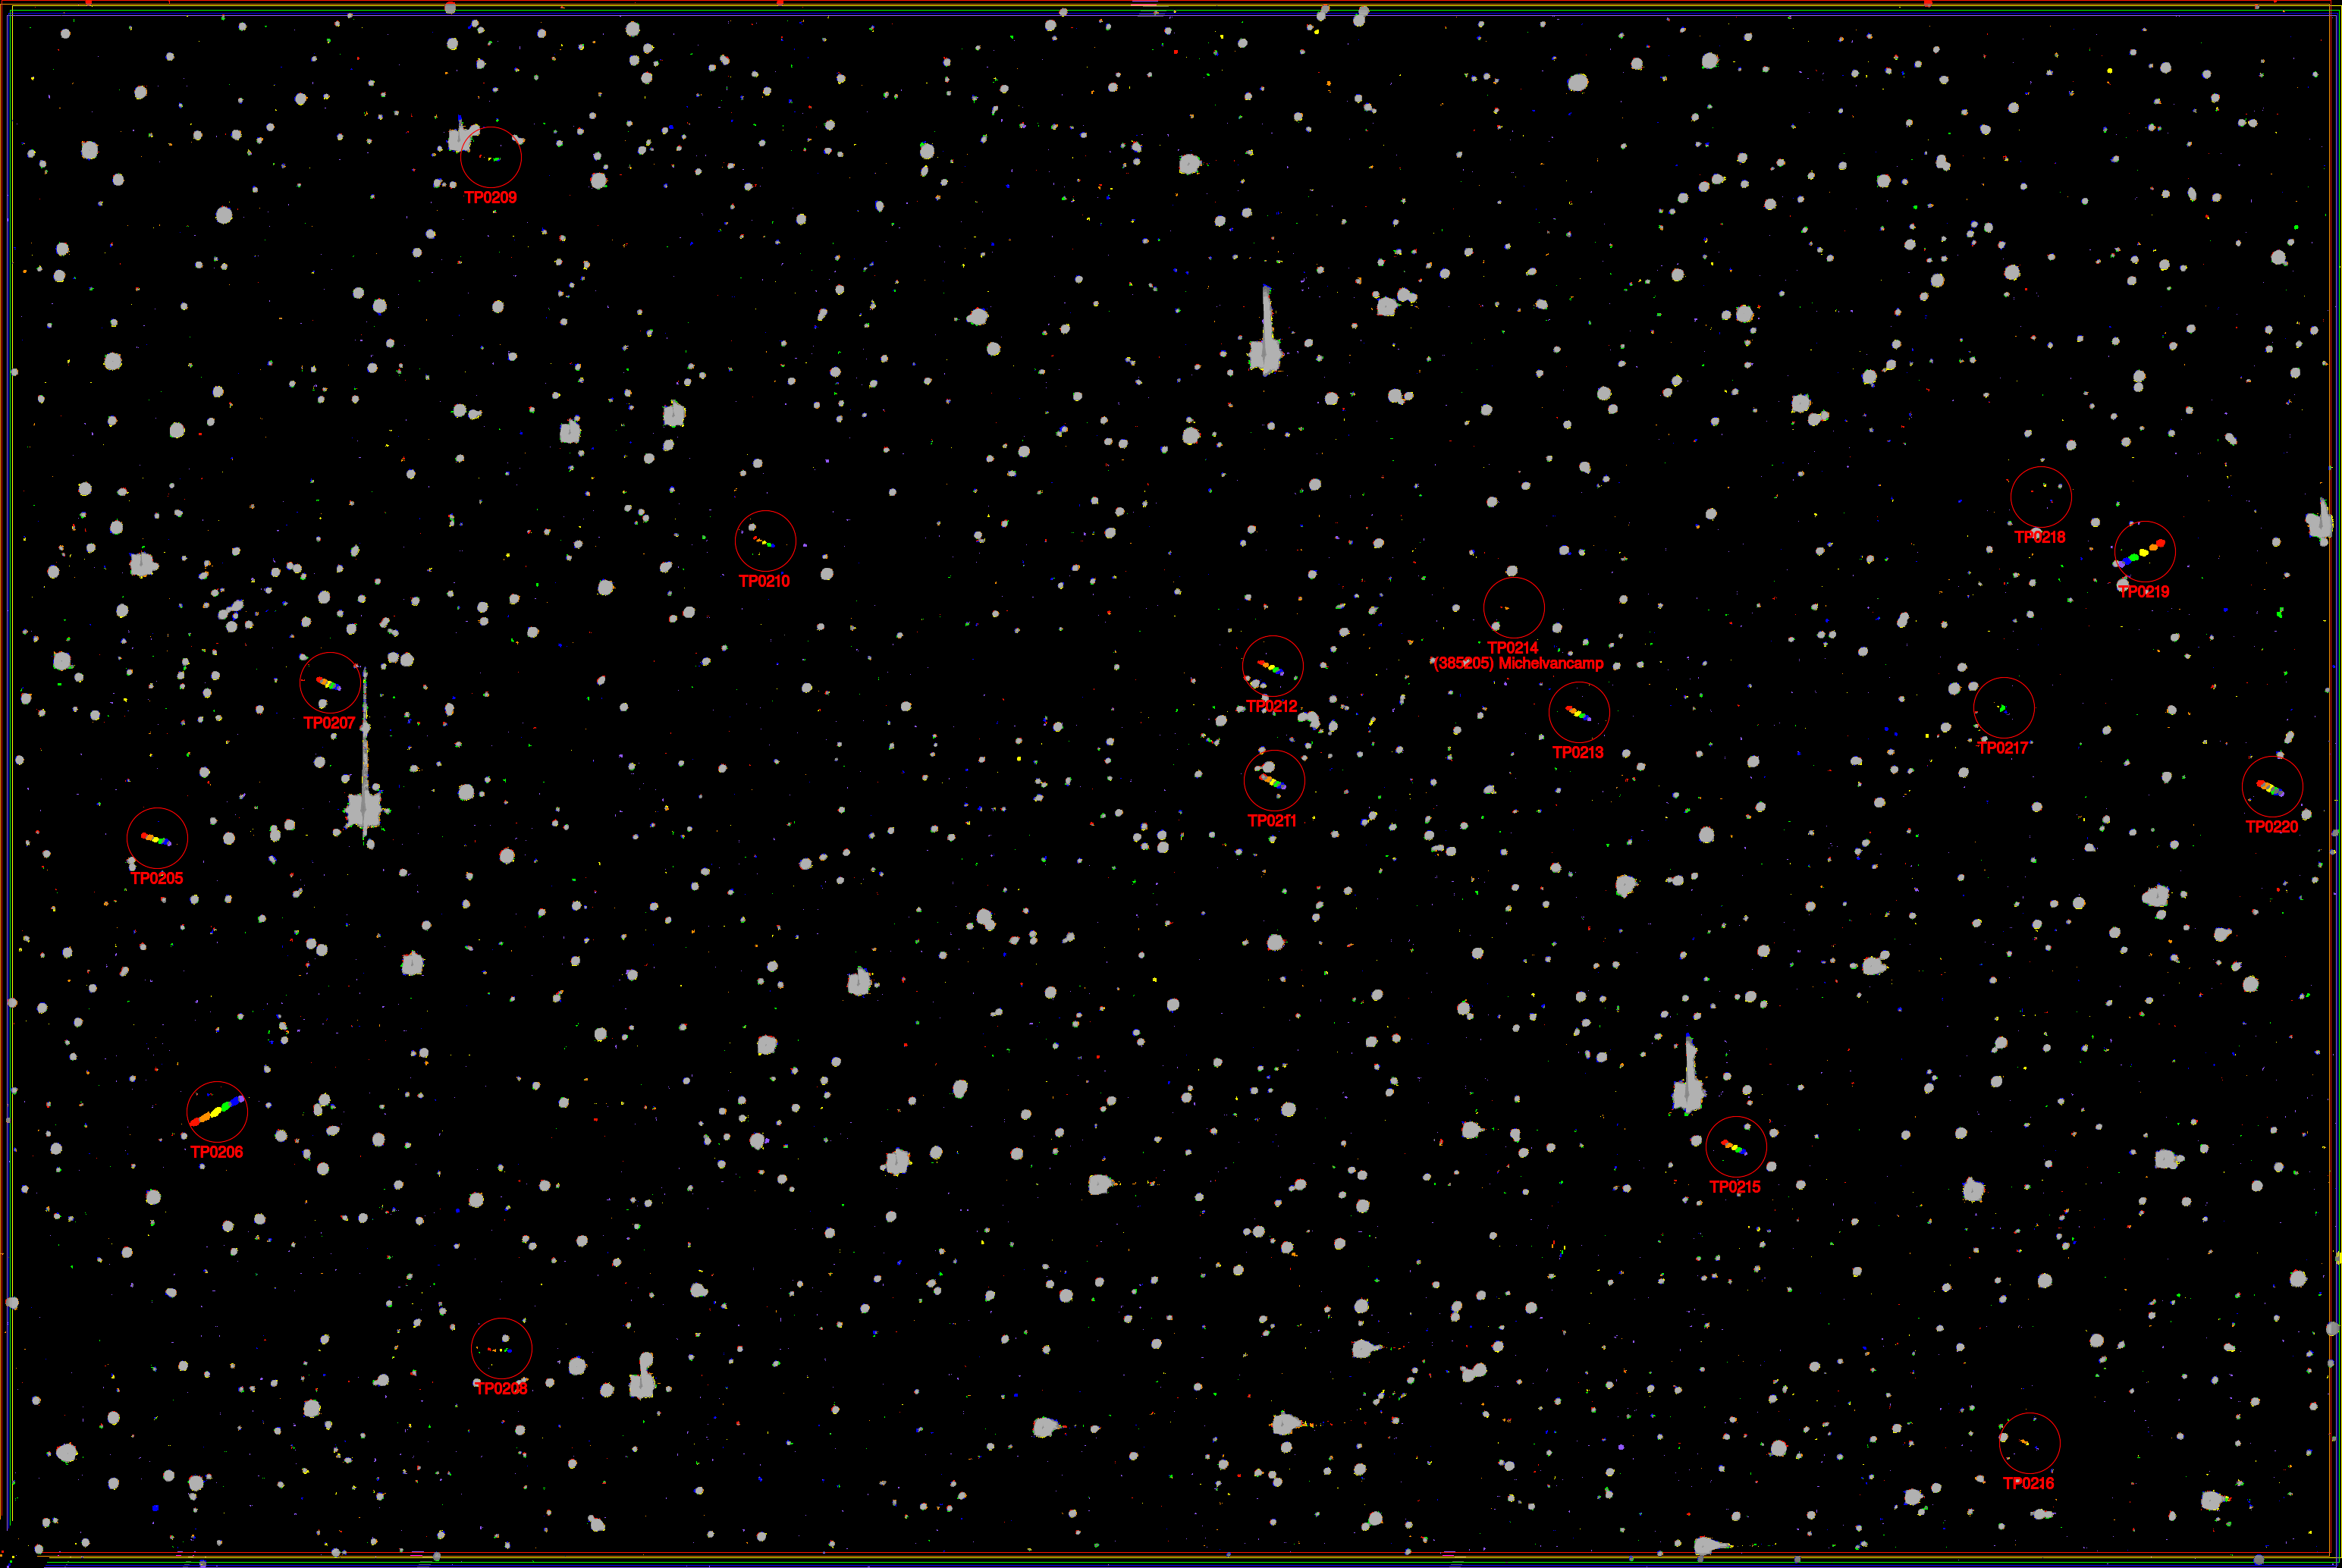 Figure 6 : Compilation de six images CCD consécutives prises à Uccle par Thierry Pauwels dans la nuit du 20 au 21 septembre 1999. L’image montre 16 astéroïdes, ce qui est le plus grand nombre jamais observé dans un seul champ de vision de la caméra CCD du télescope Uccle Schmidt. Sur ces 16 astéroïdes, 6 à 8 ont été découverts à Uccle. L’astéroïde (385205) Michelvancamp est annoté ici comme « TP0214 ». Les astéroïdes apparaissent comme un collier de perles aux couleurs de l’arc-en-ciel, tandis que les étoiles apparaissent comme des points gris et le bruit de l’image comme des points d’une seule couleur.